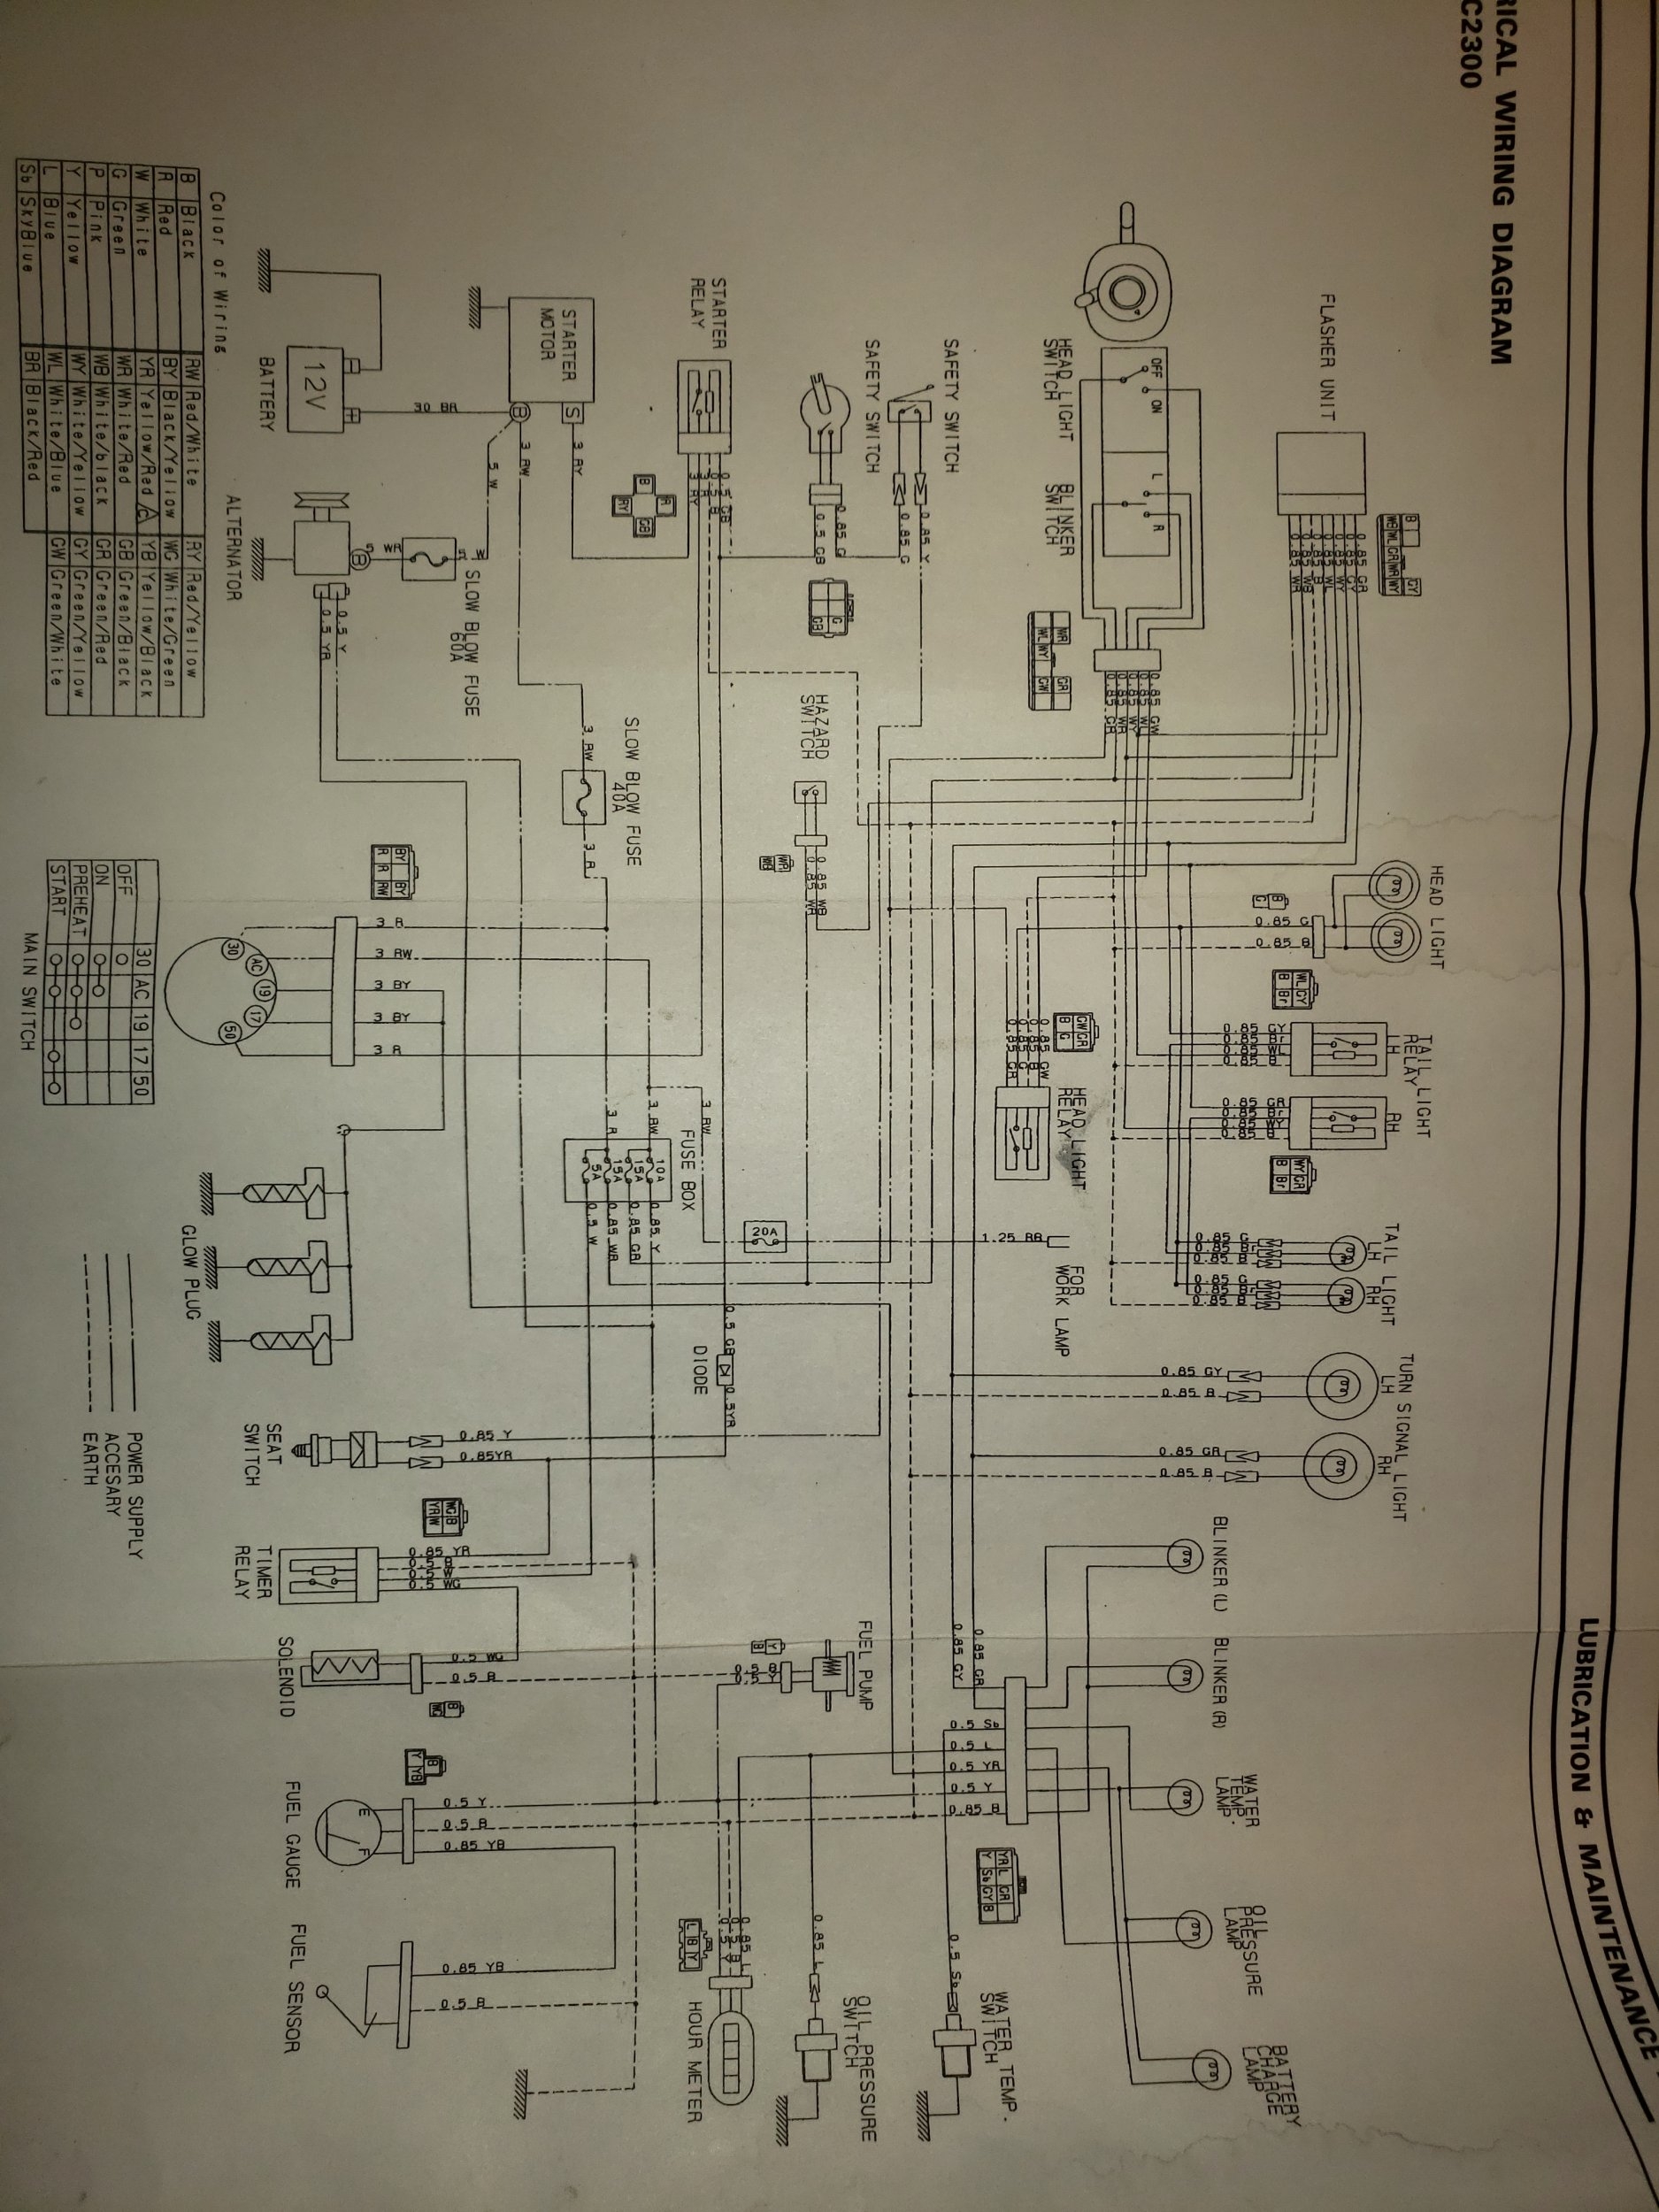 GC2300 wiring.jpg